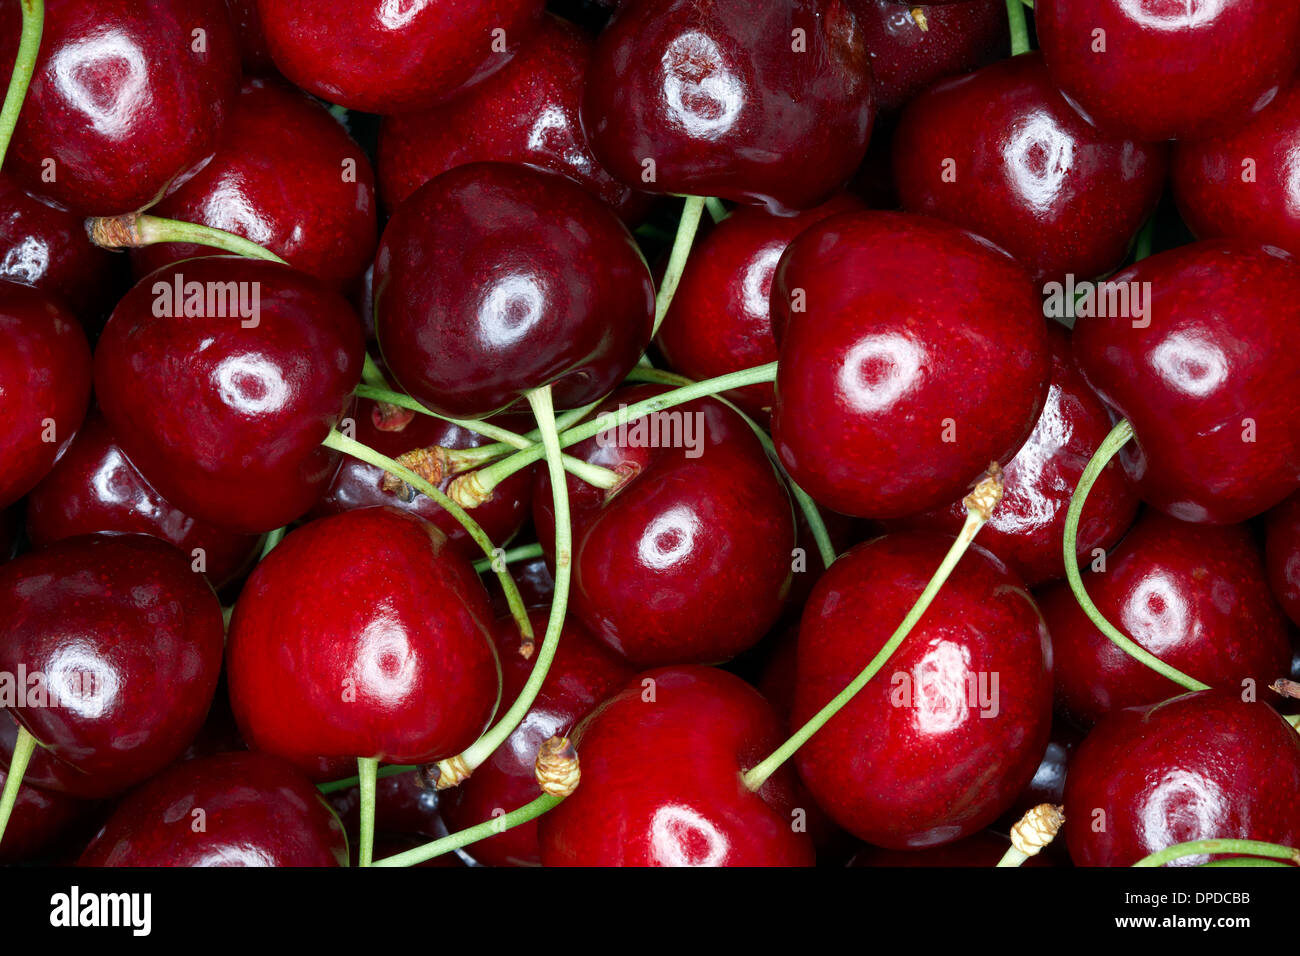 Cherries, full frame Stock Photo